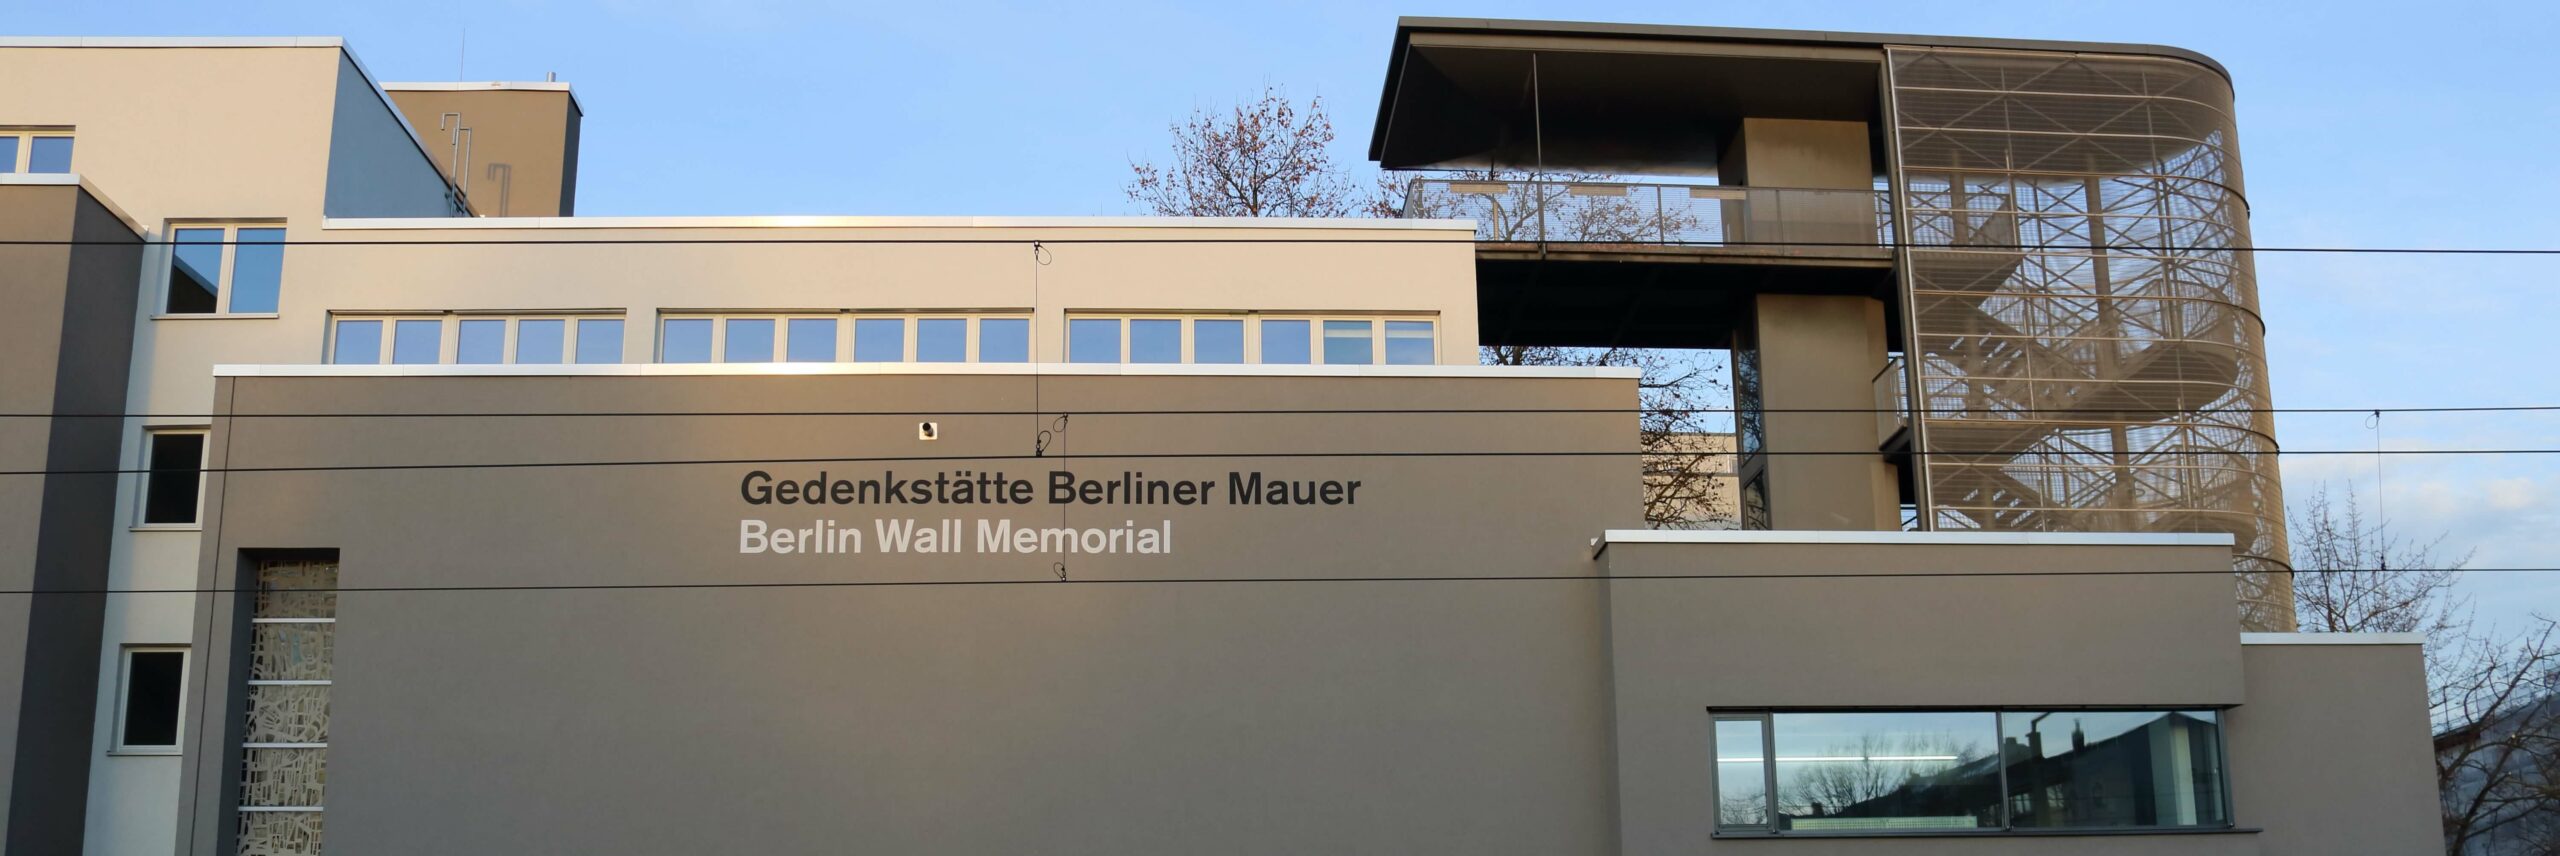 Gedenkstätte Berliner Mauer - Bernauer Strasse 111 - Berlin